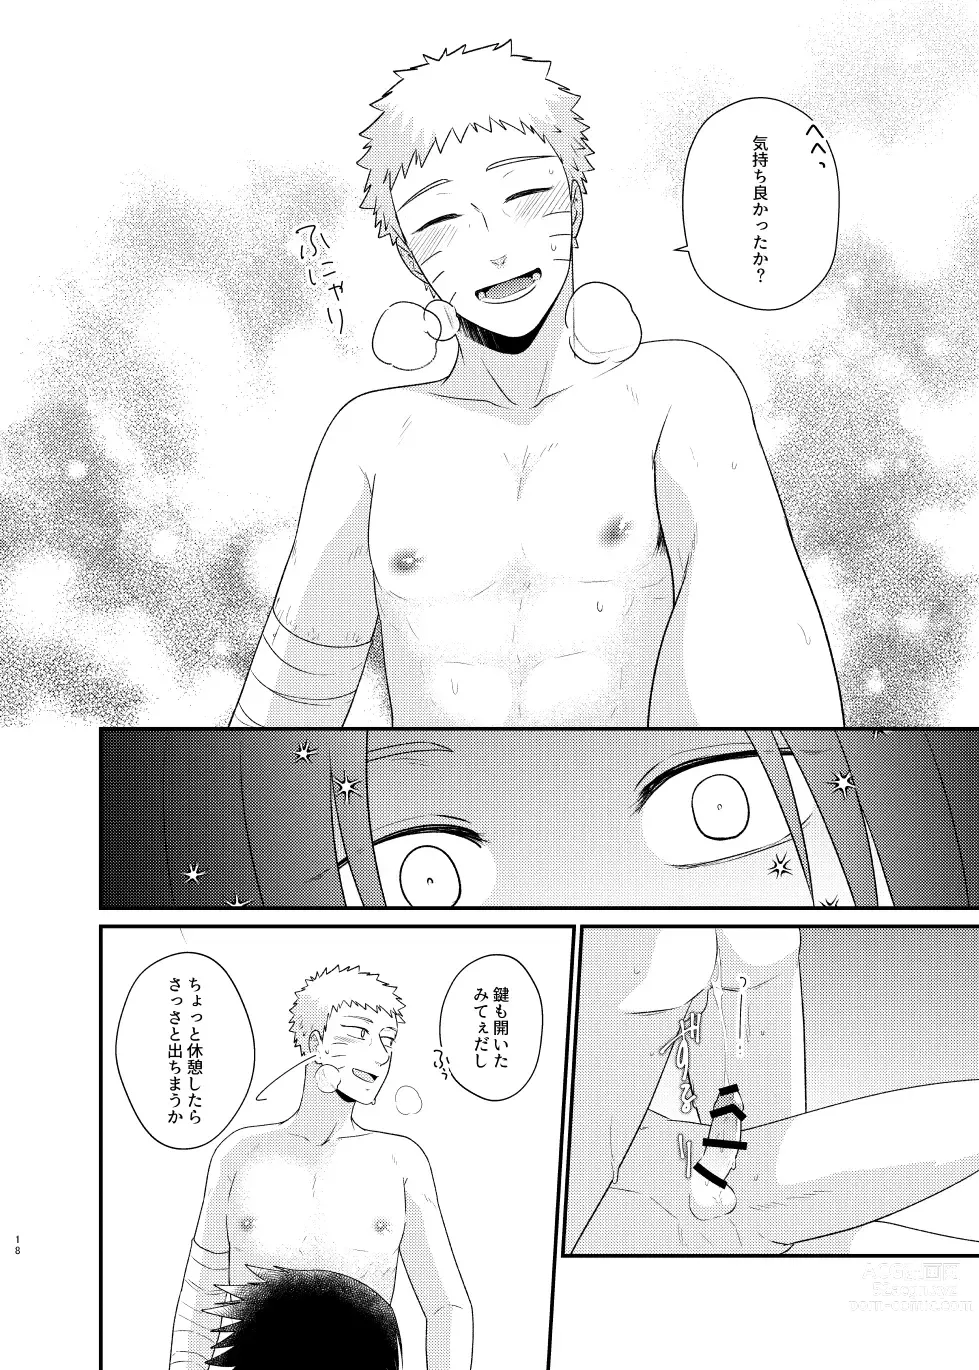 Page 15 of doujinshi Gochamaze 37 ~Rei no Heya ni Tojikomete Okimashita~